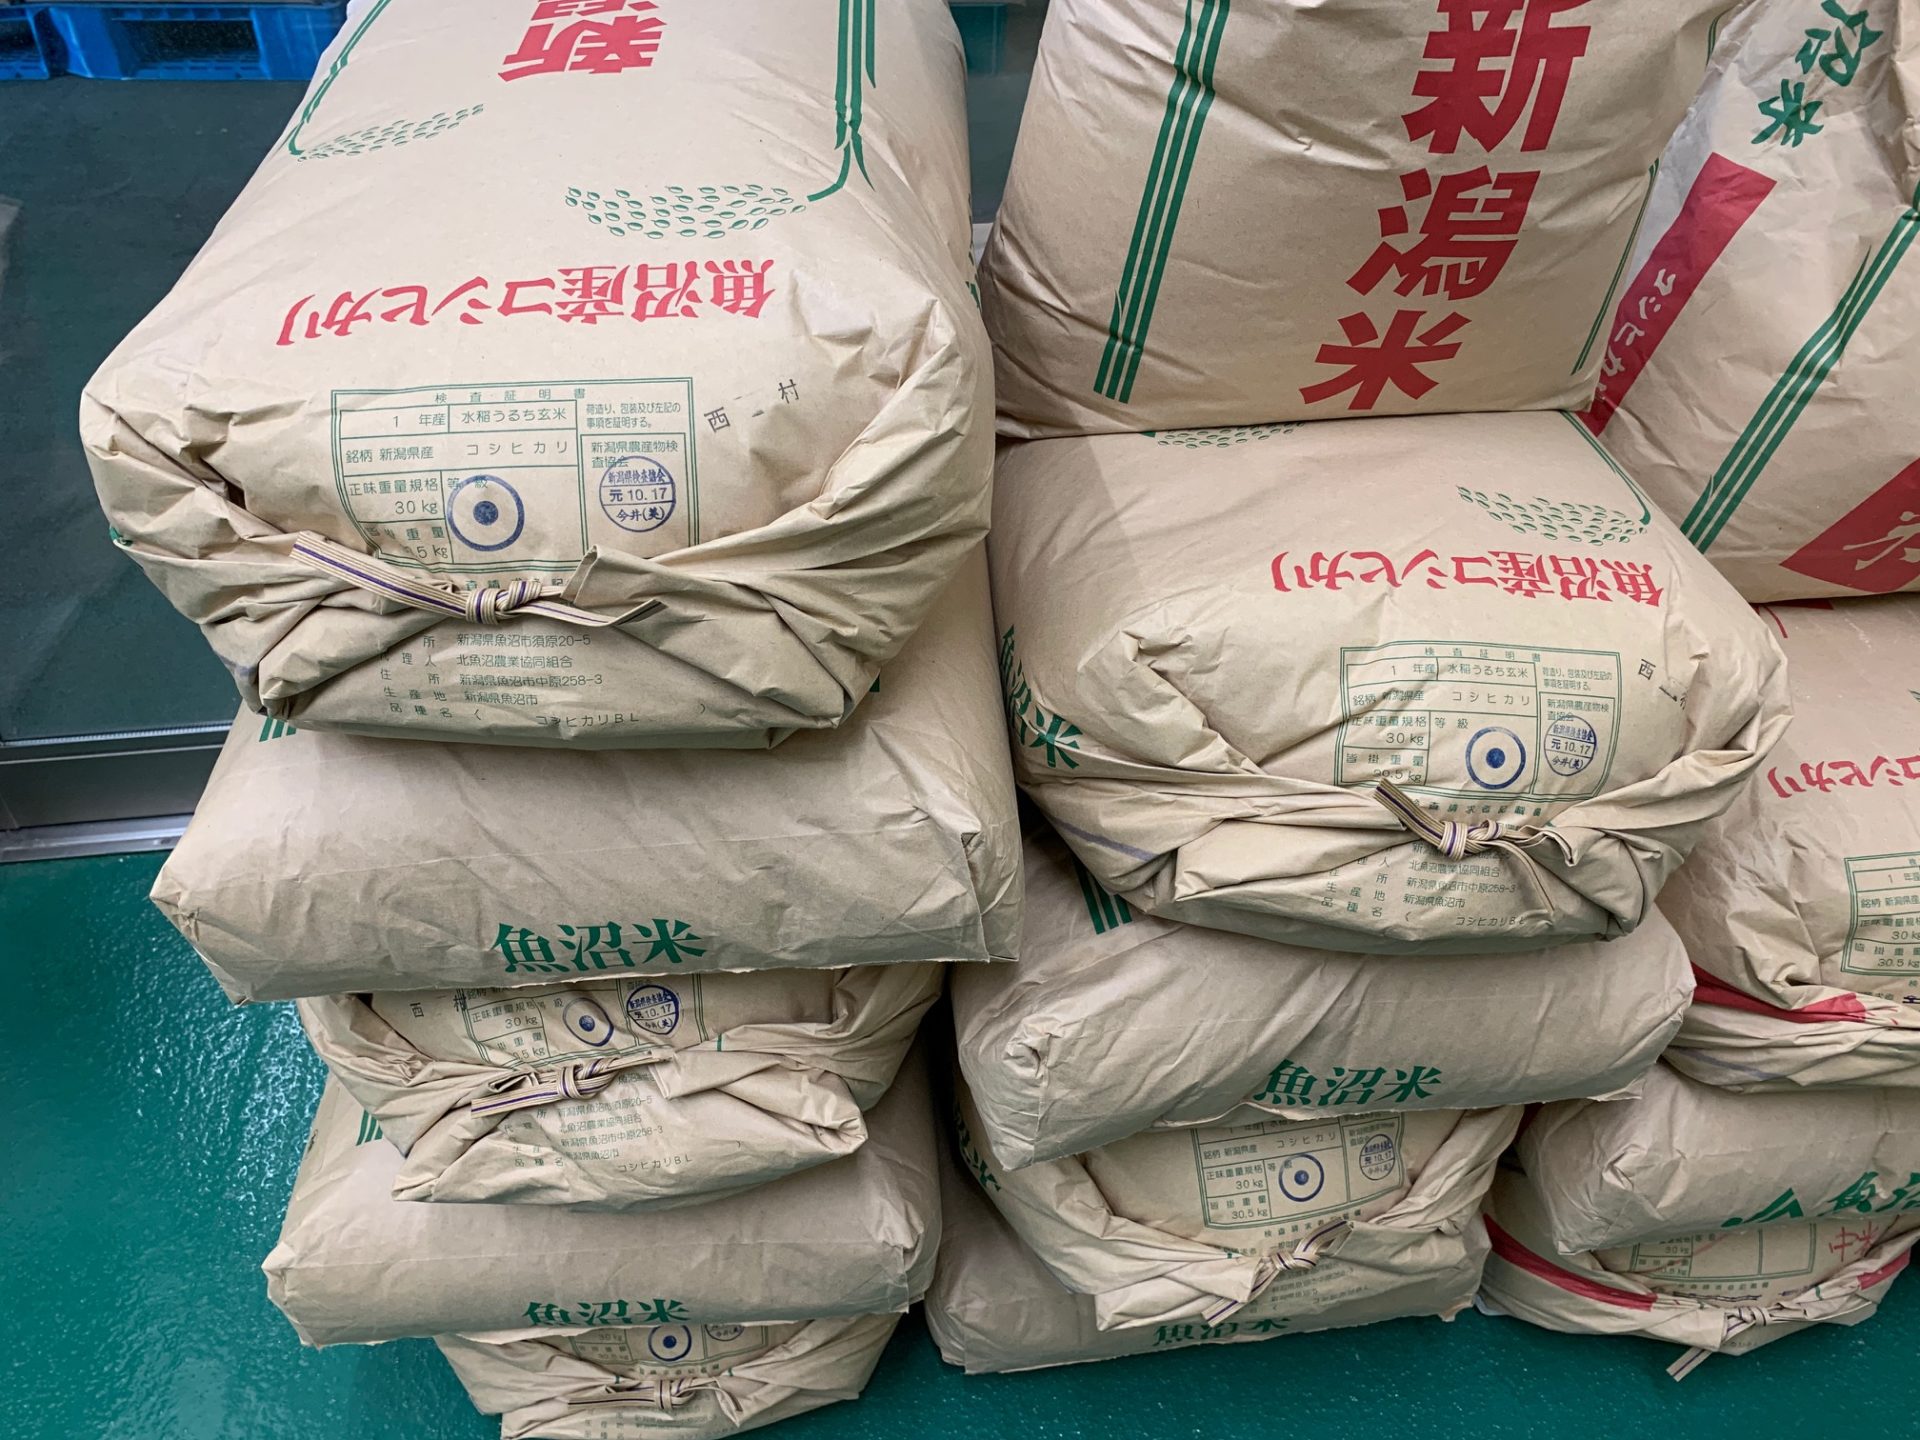 レジ袋有料化で、魚沼産コシヒカリの米袋をリメイクしたマイバックが活躍⁈ - 新着情報 - 一般財団法人 魚沼農耕舎